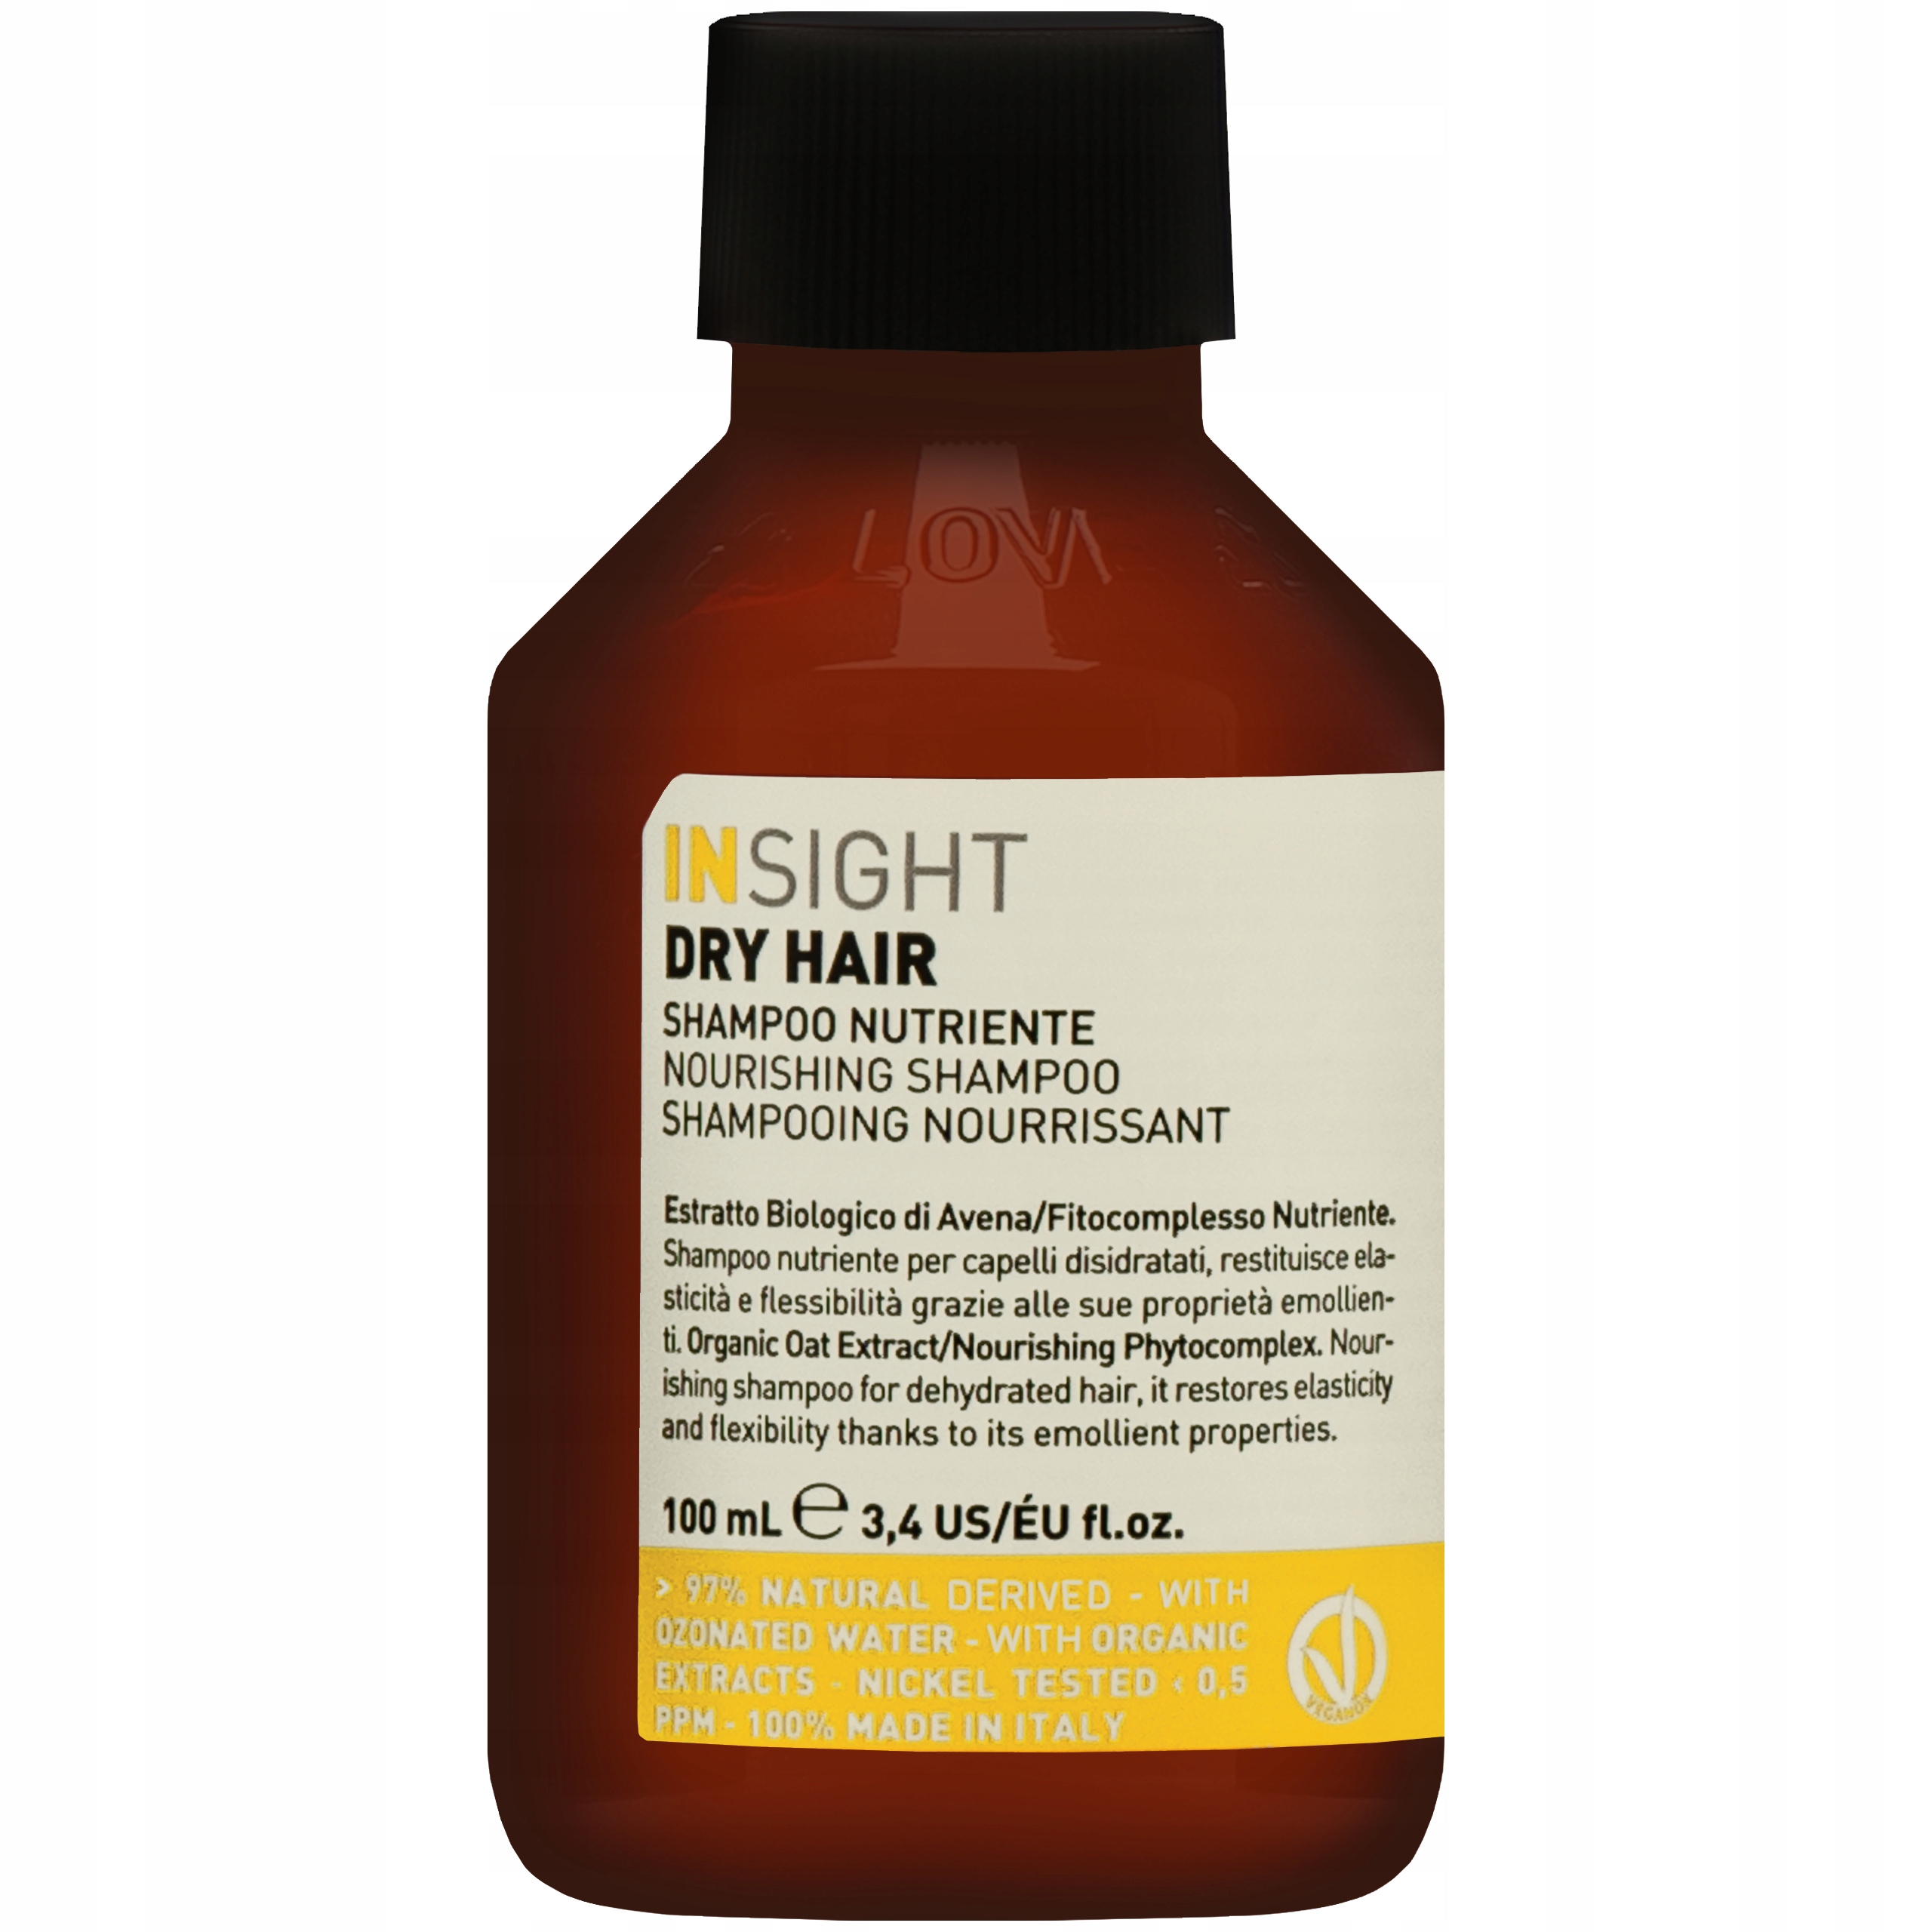 insight dry hair szampon do włosów suchych